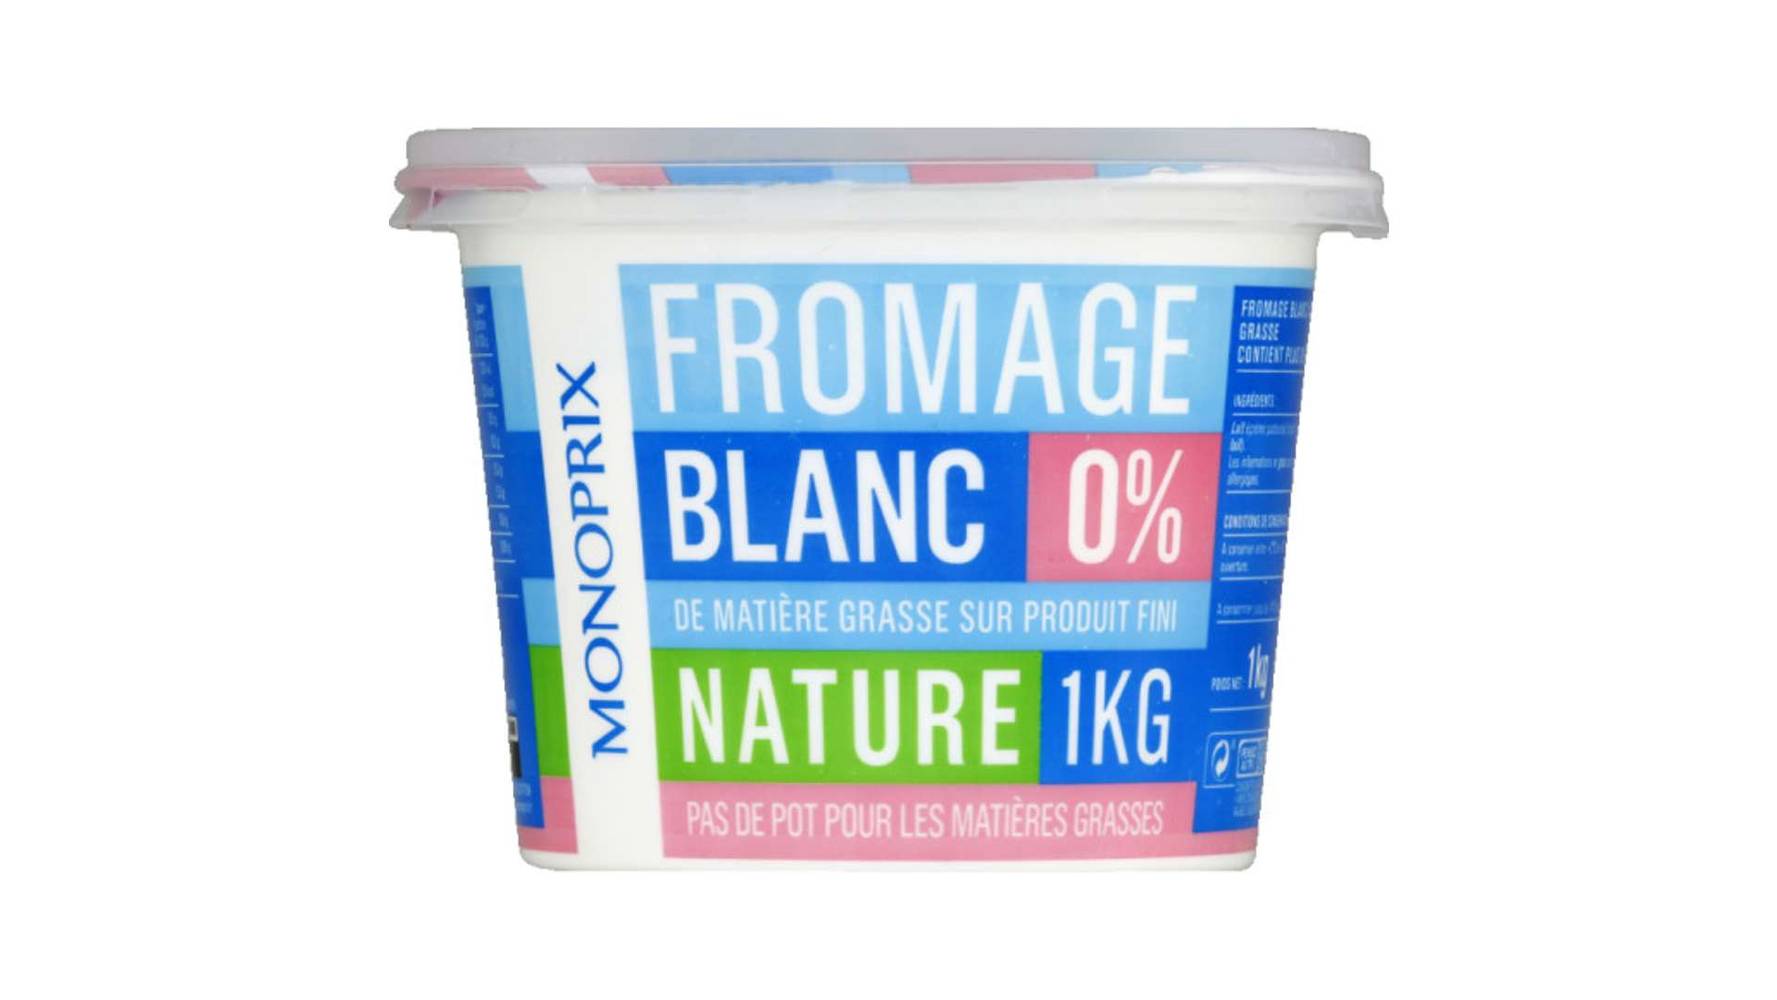 Monoprix Fromage blanc 0% MG nature Le pot de 1 kg